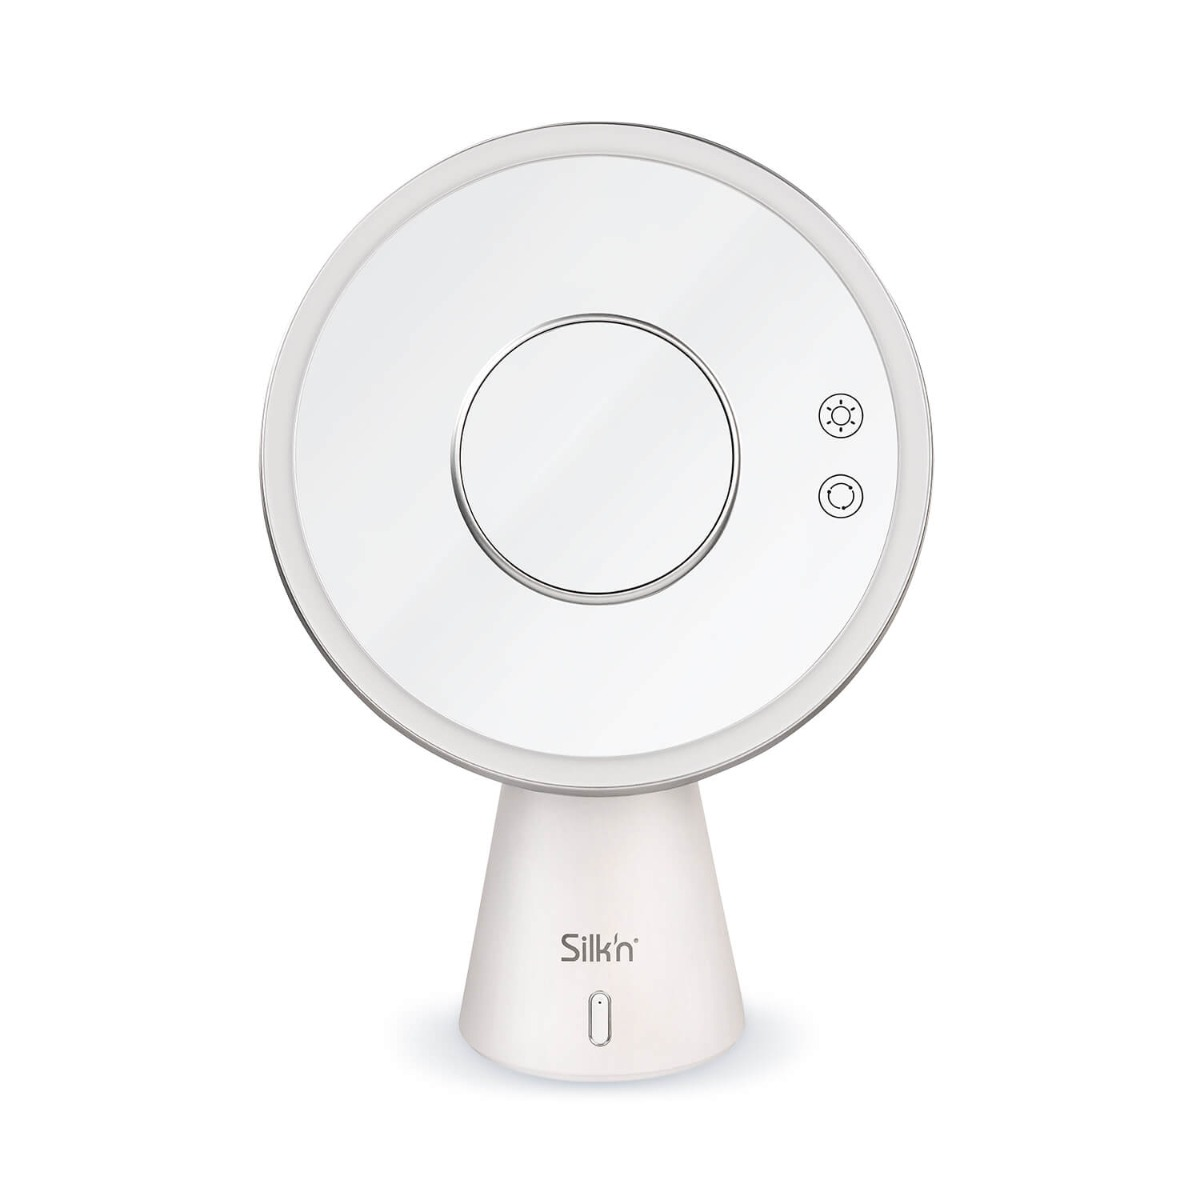 Weiß Bluetooth-Lautsprecher mit Kosmetikspiegel SILK\'N LED-Spiegel - Music Mirror